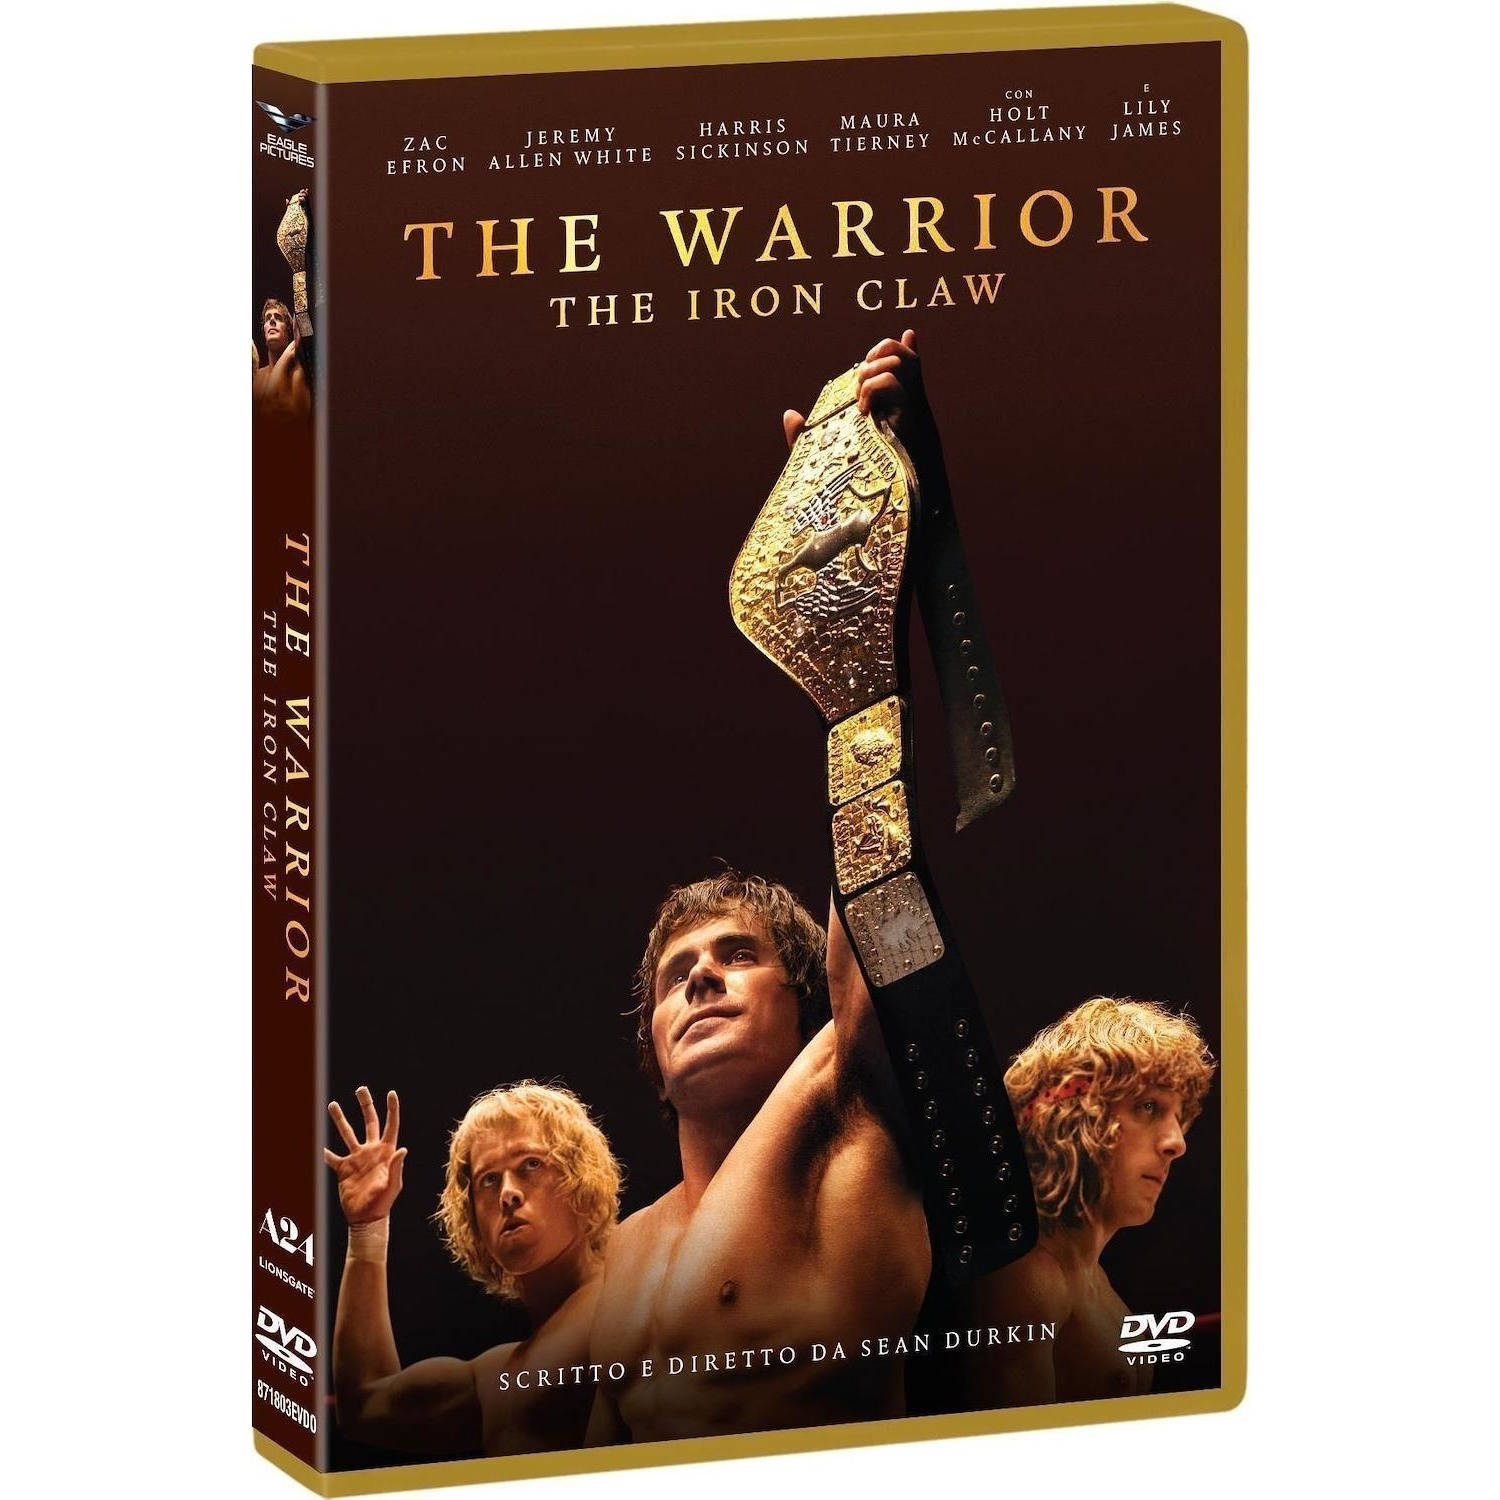 Immagine per DVD The Warrior - The iron claw da DIMOStore